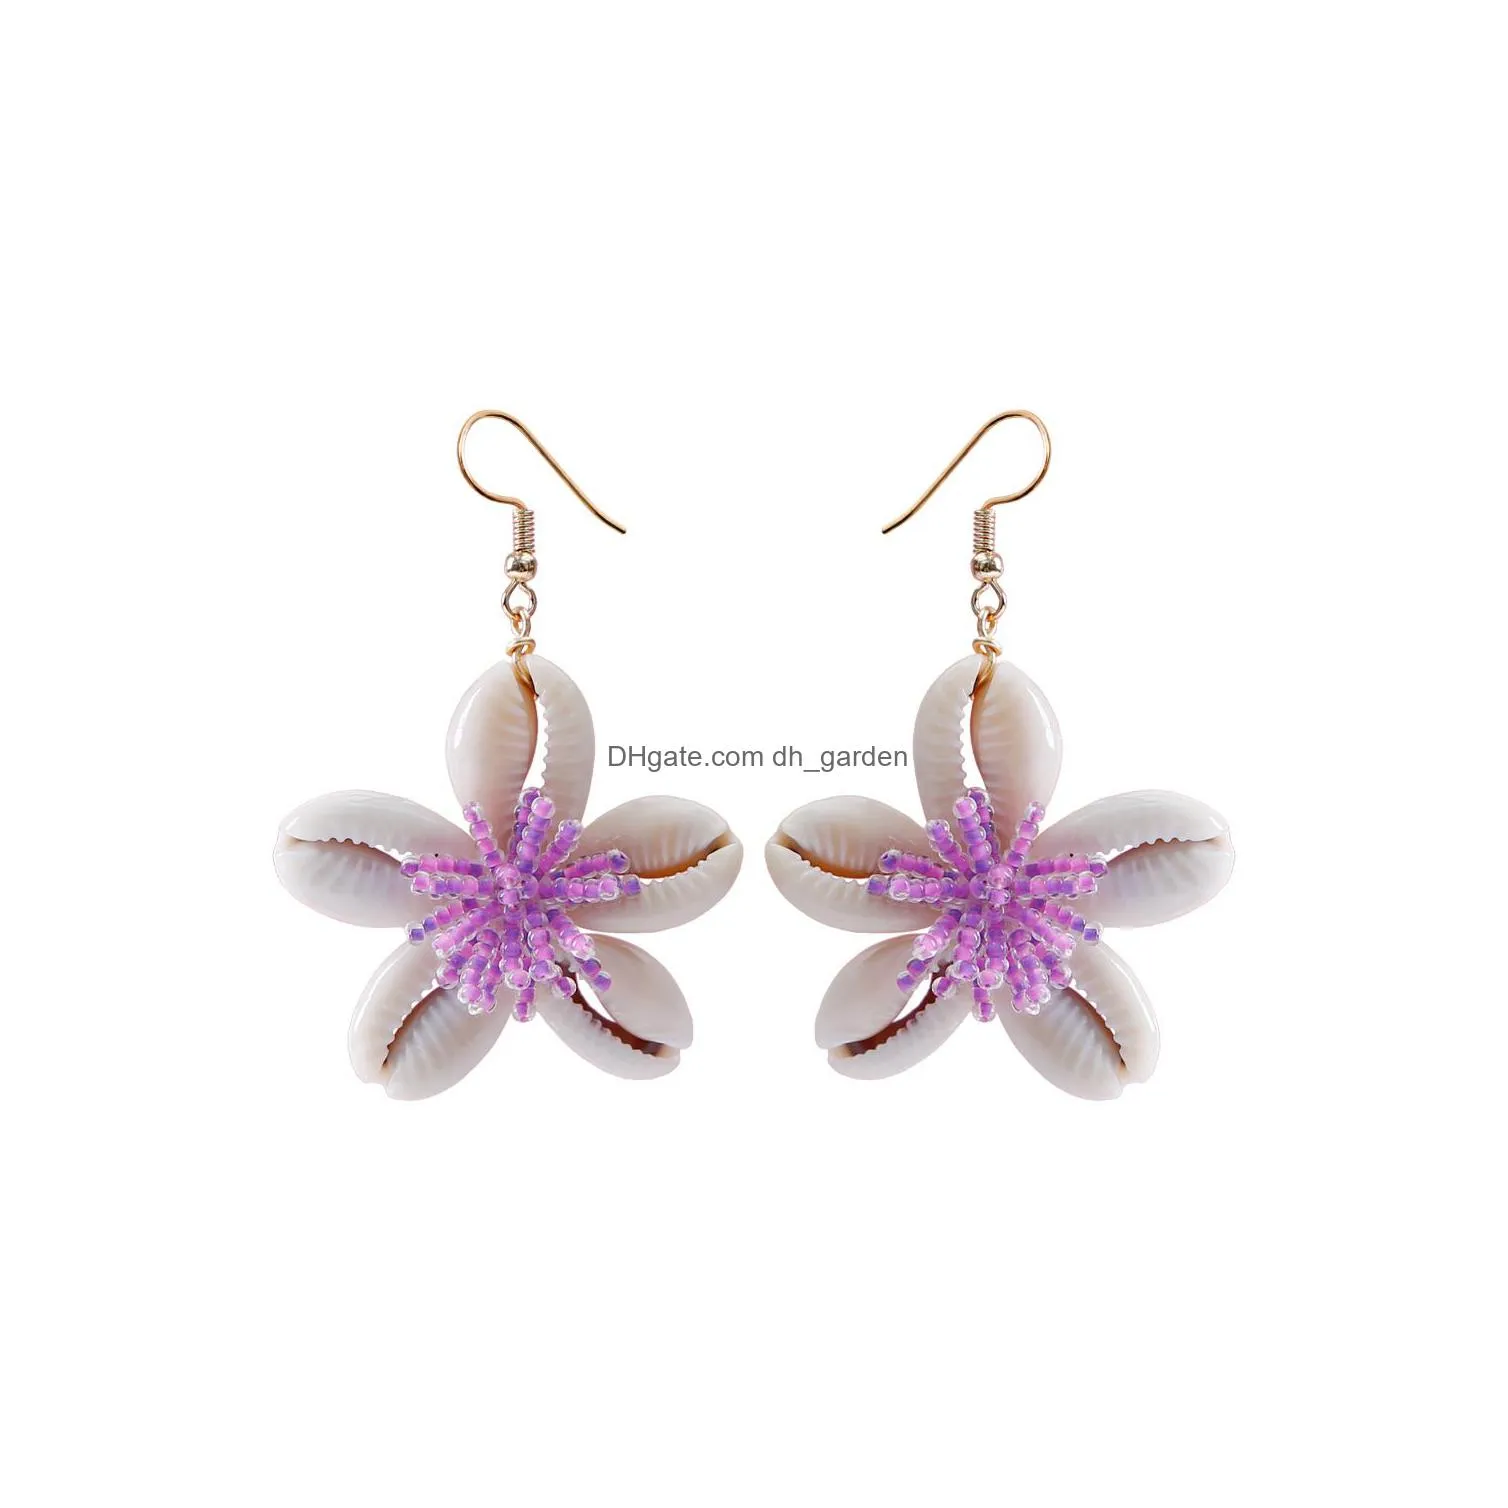 Dangle & Chandelier Ocean Wind Bohemia Conch Shell Flower Earrings For Women Hoop Bohemian Fringe Handmade Earring Drop Del Dhgarden Dhotj